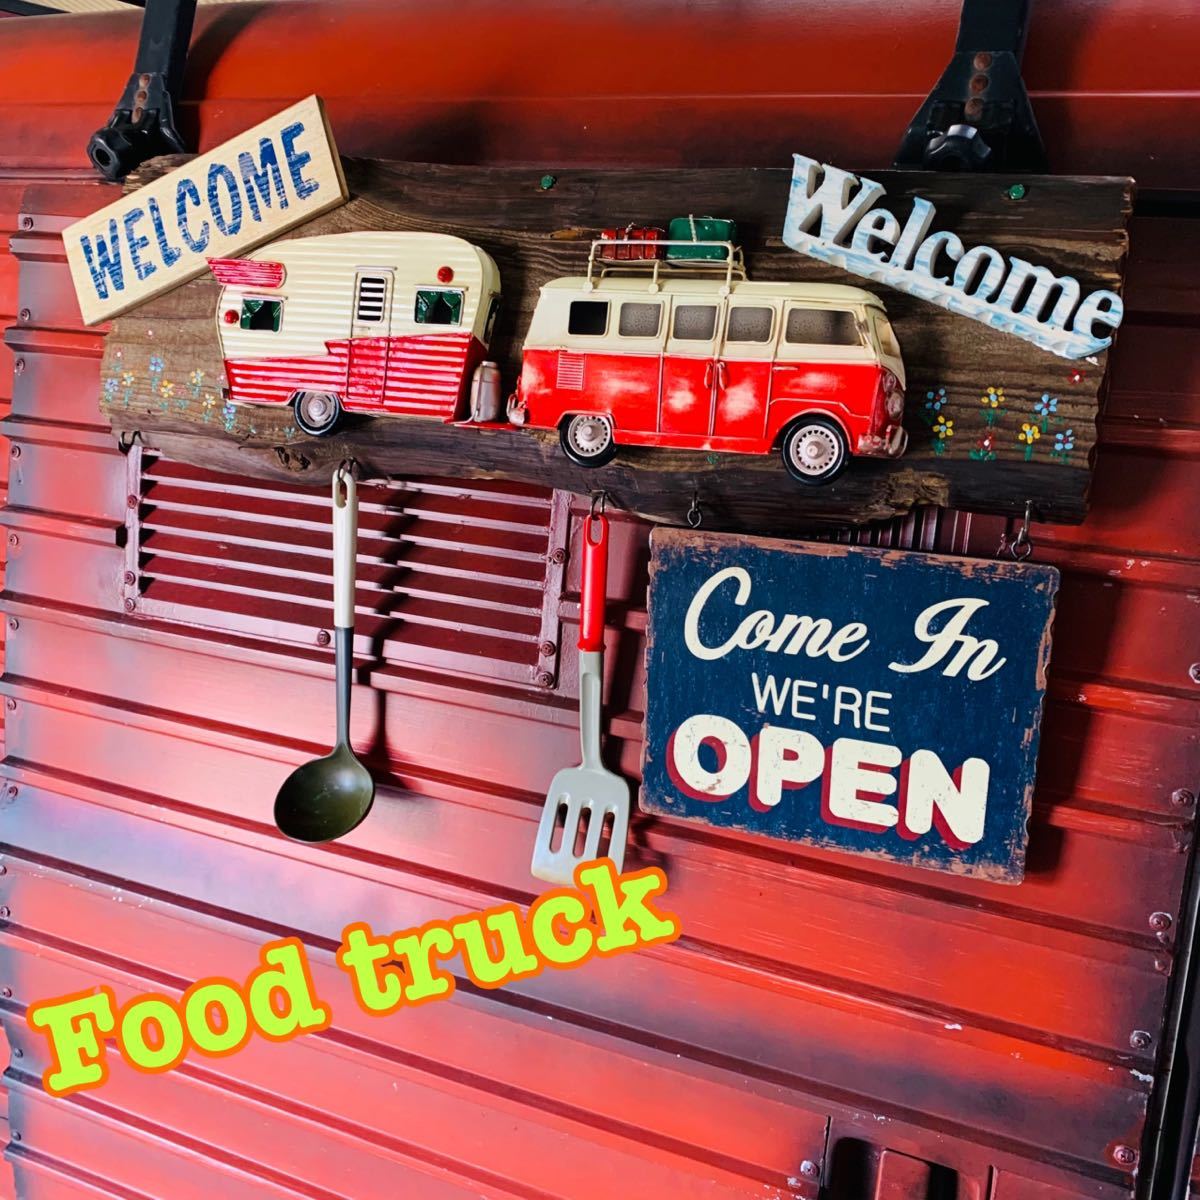 美式复古风格 / OPEN & WELCOME 标志 / 营业标志 (大众巴士) #商店设备 #厨房车 #活动车, 手工制品, 内部的, 杂货, 其他的